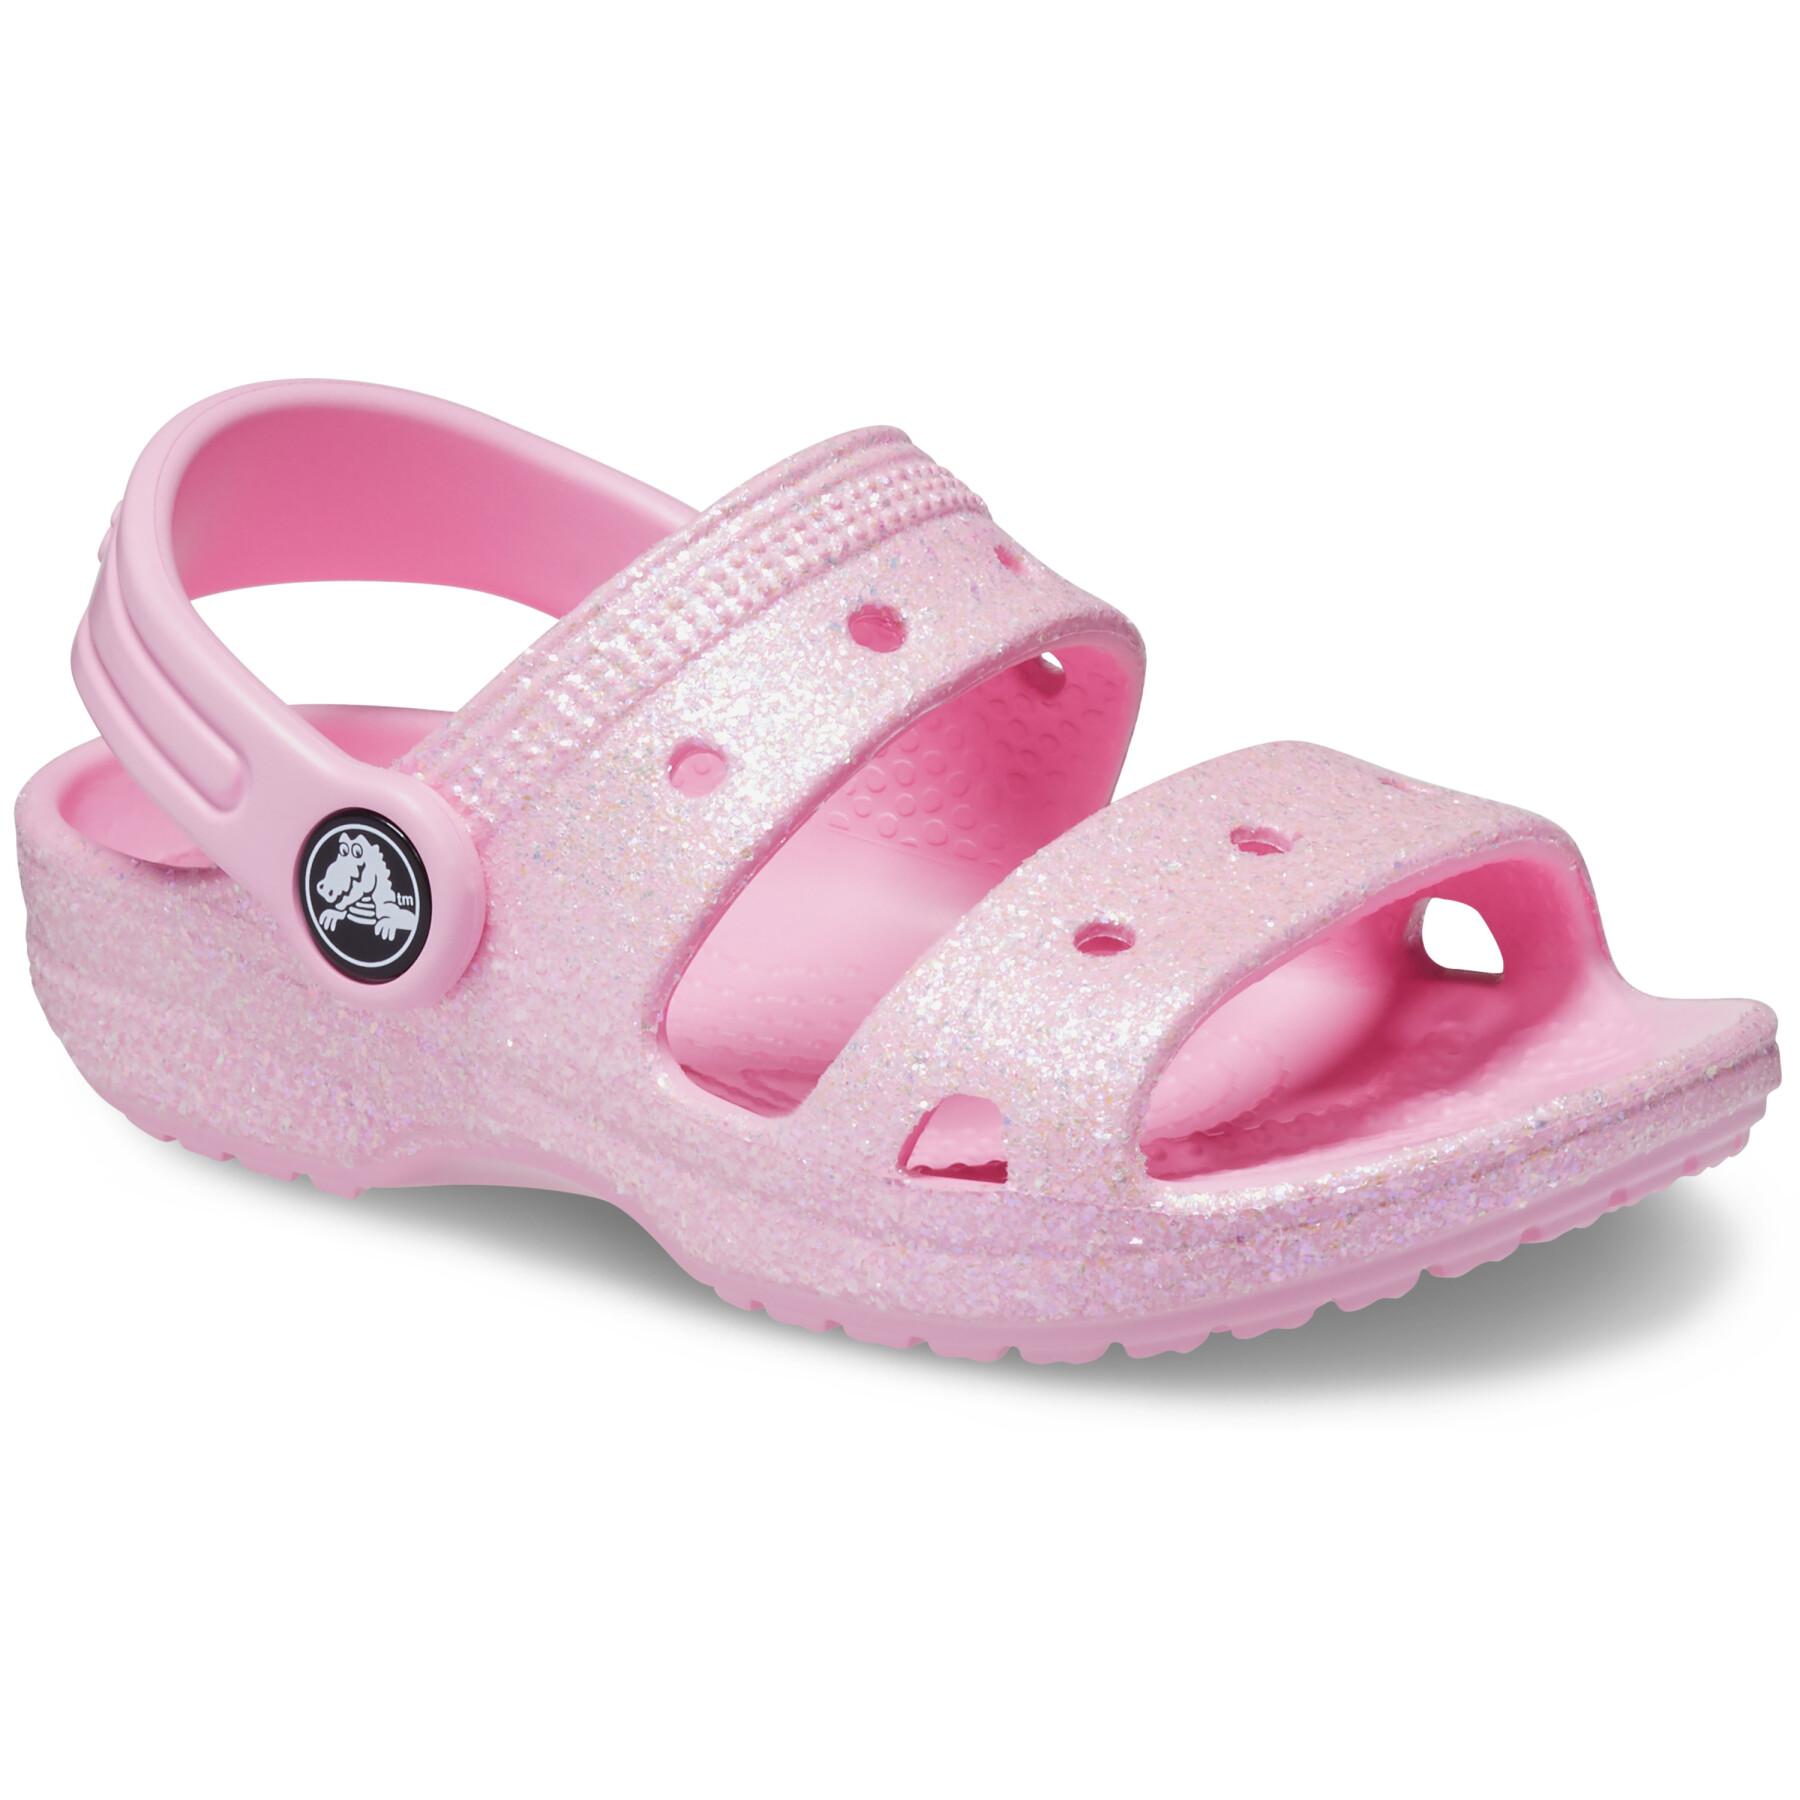 Baby sandals Crocs Classics Glitter